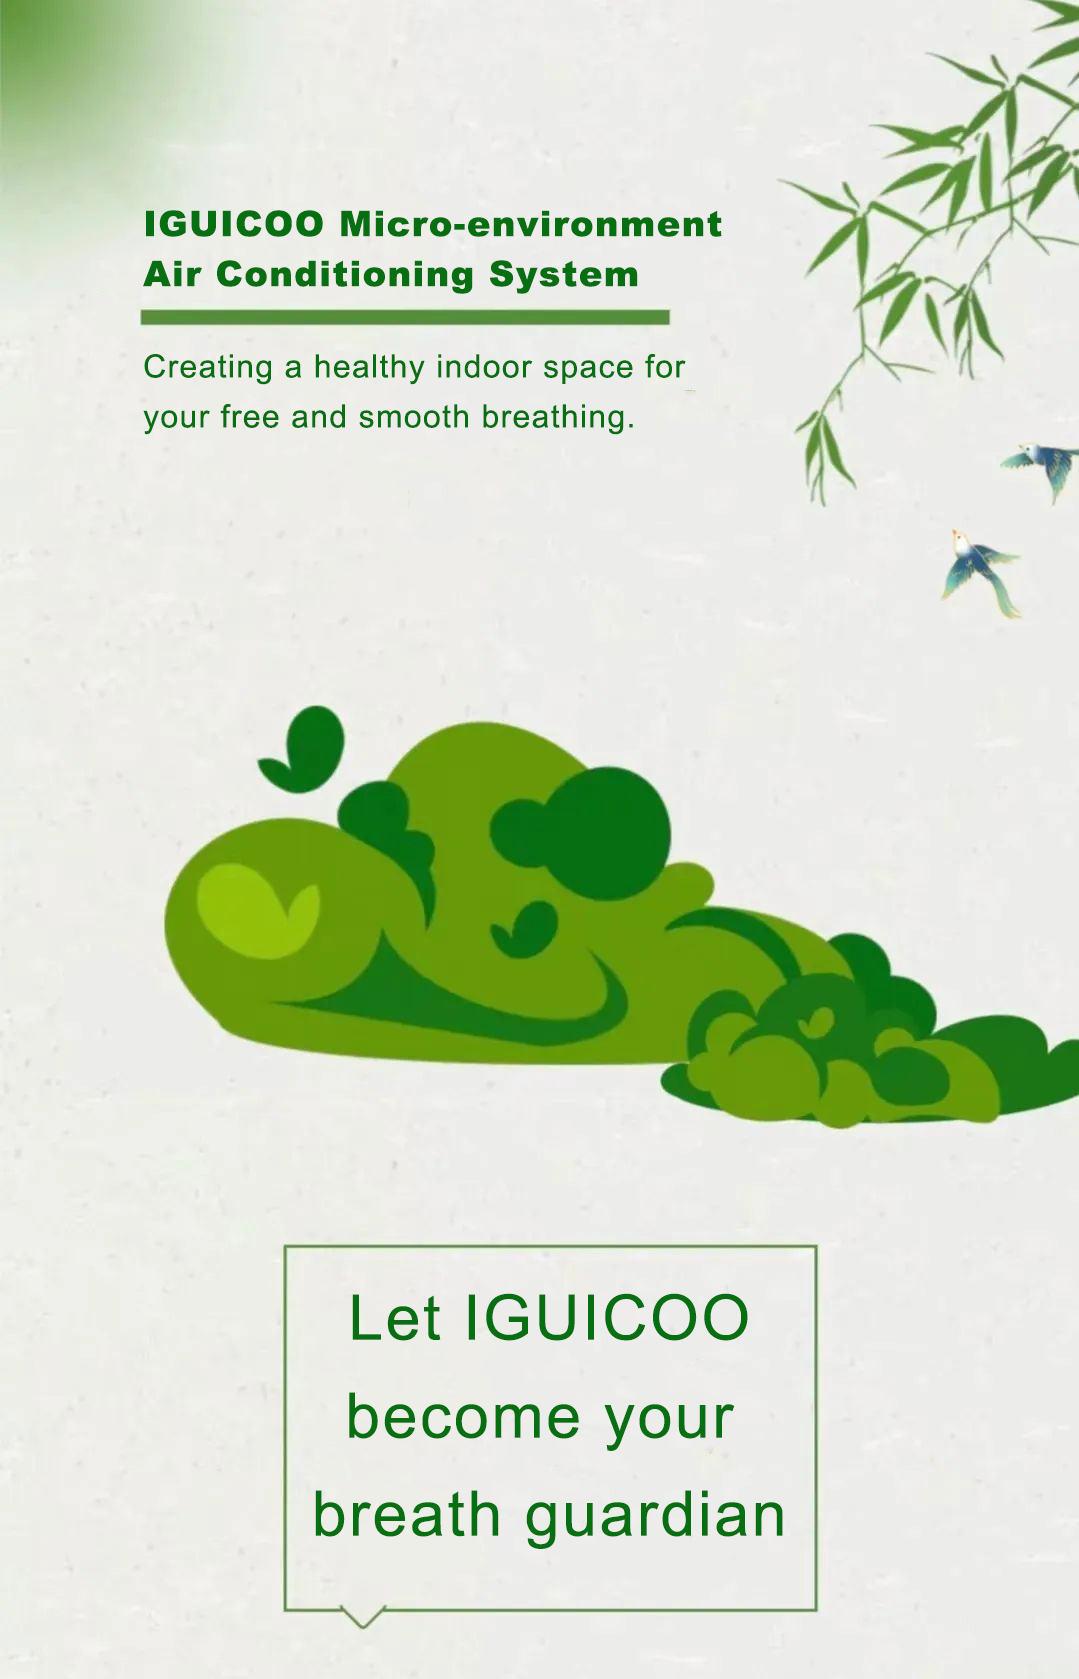 Sistemi i kondicionimit të mikromjedisit IGUICOO